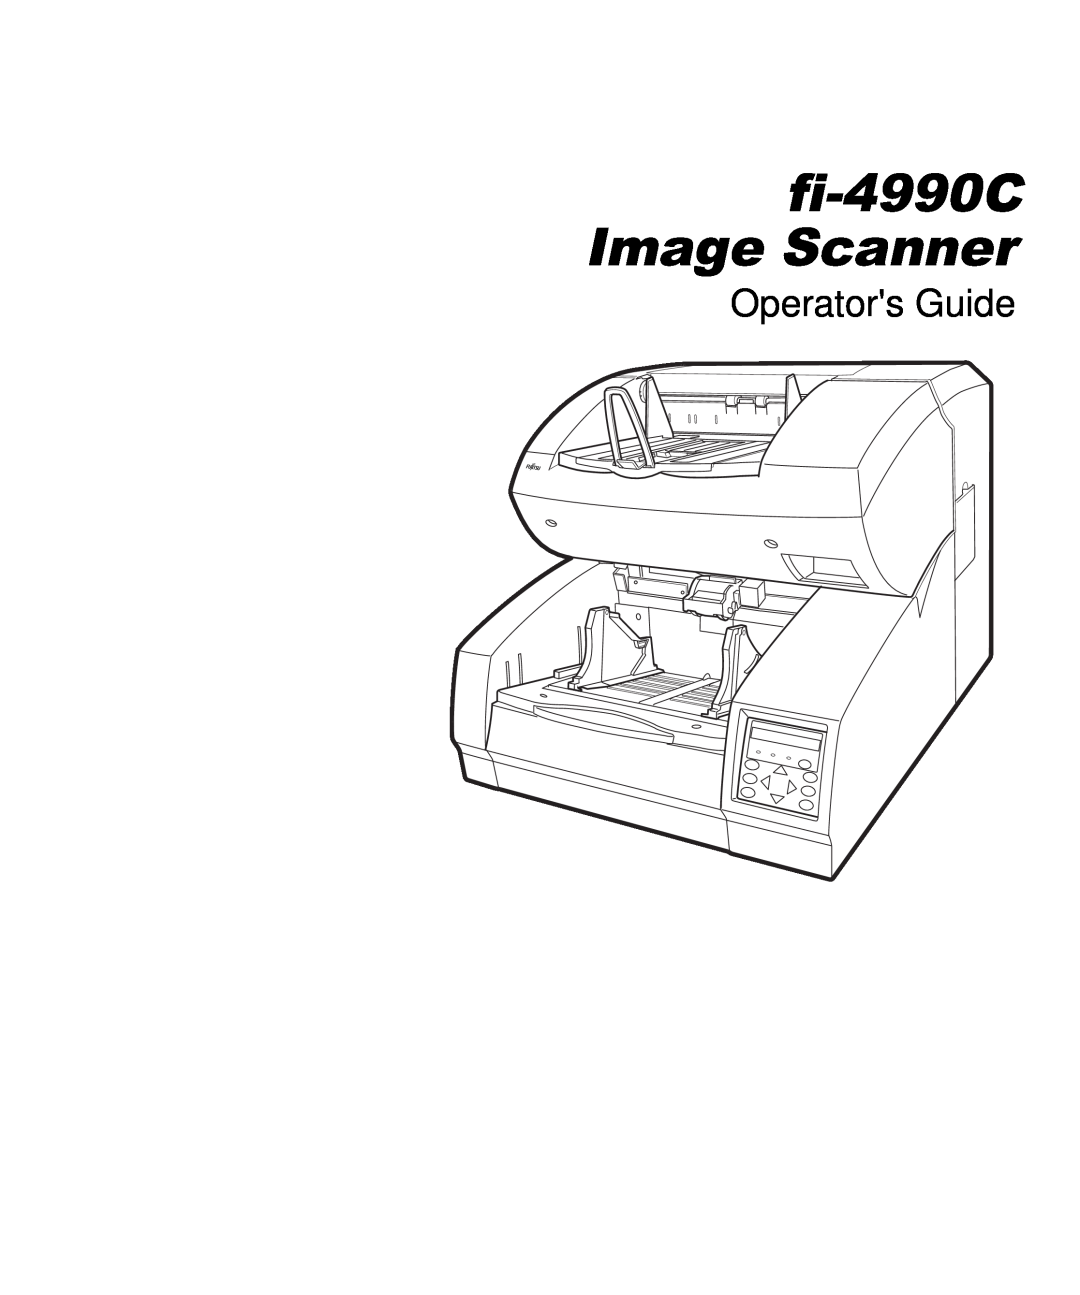 Fujitsu manual fi-4990C Image Scanner, Operators Guide 